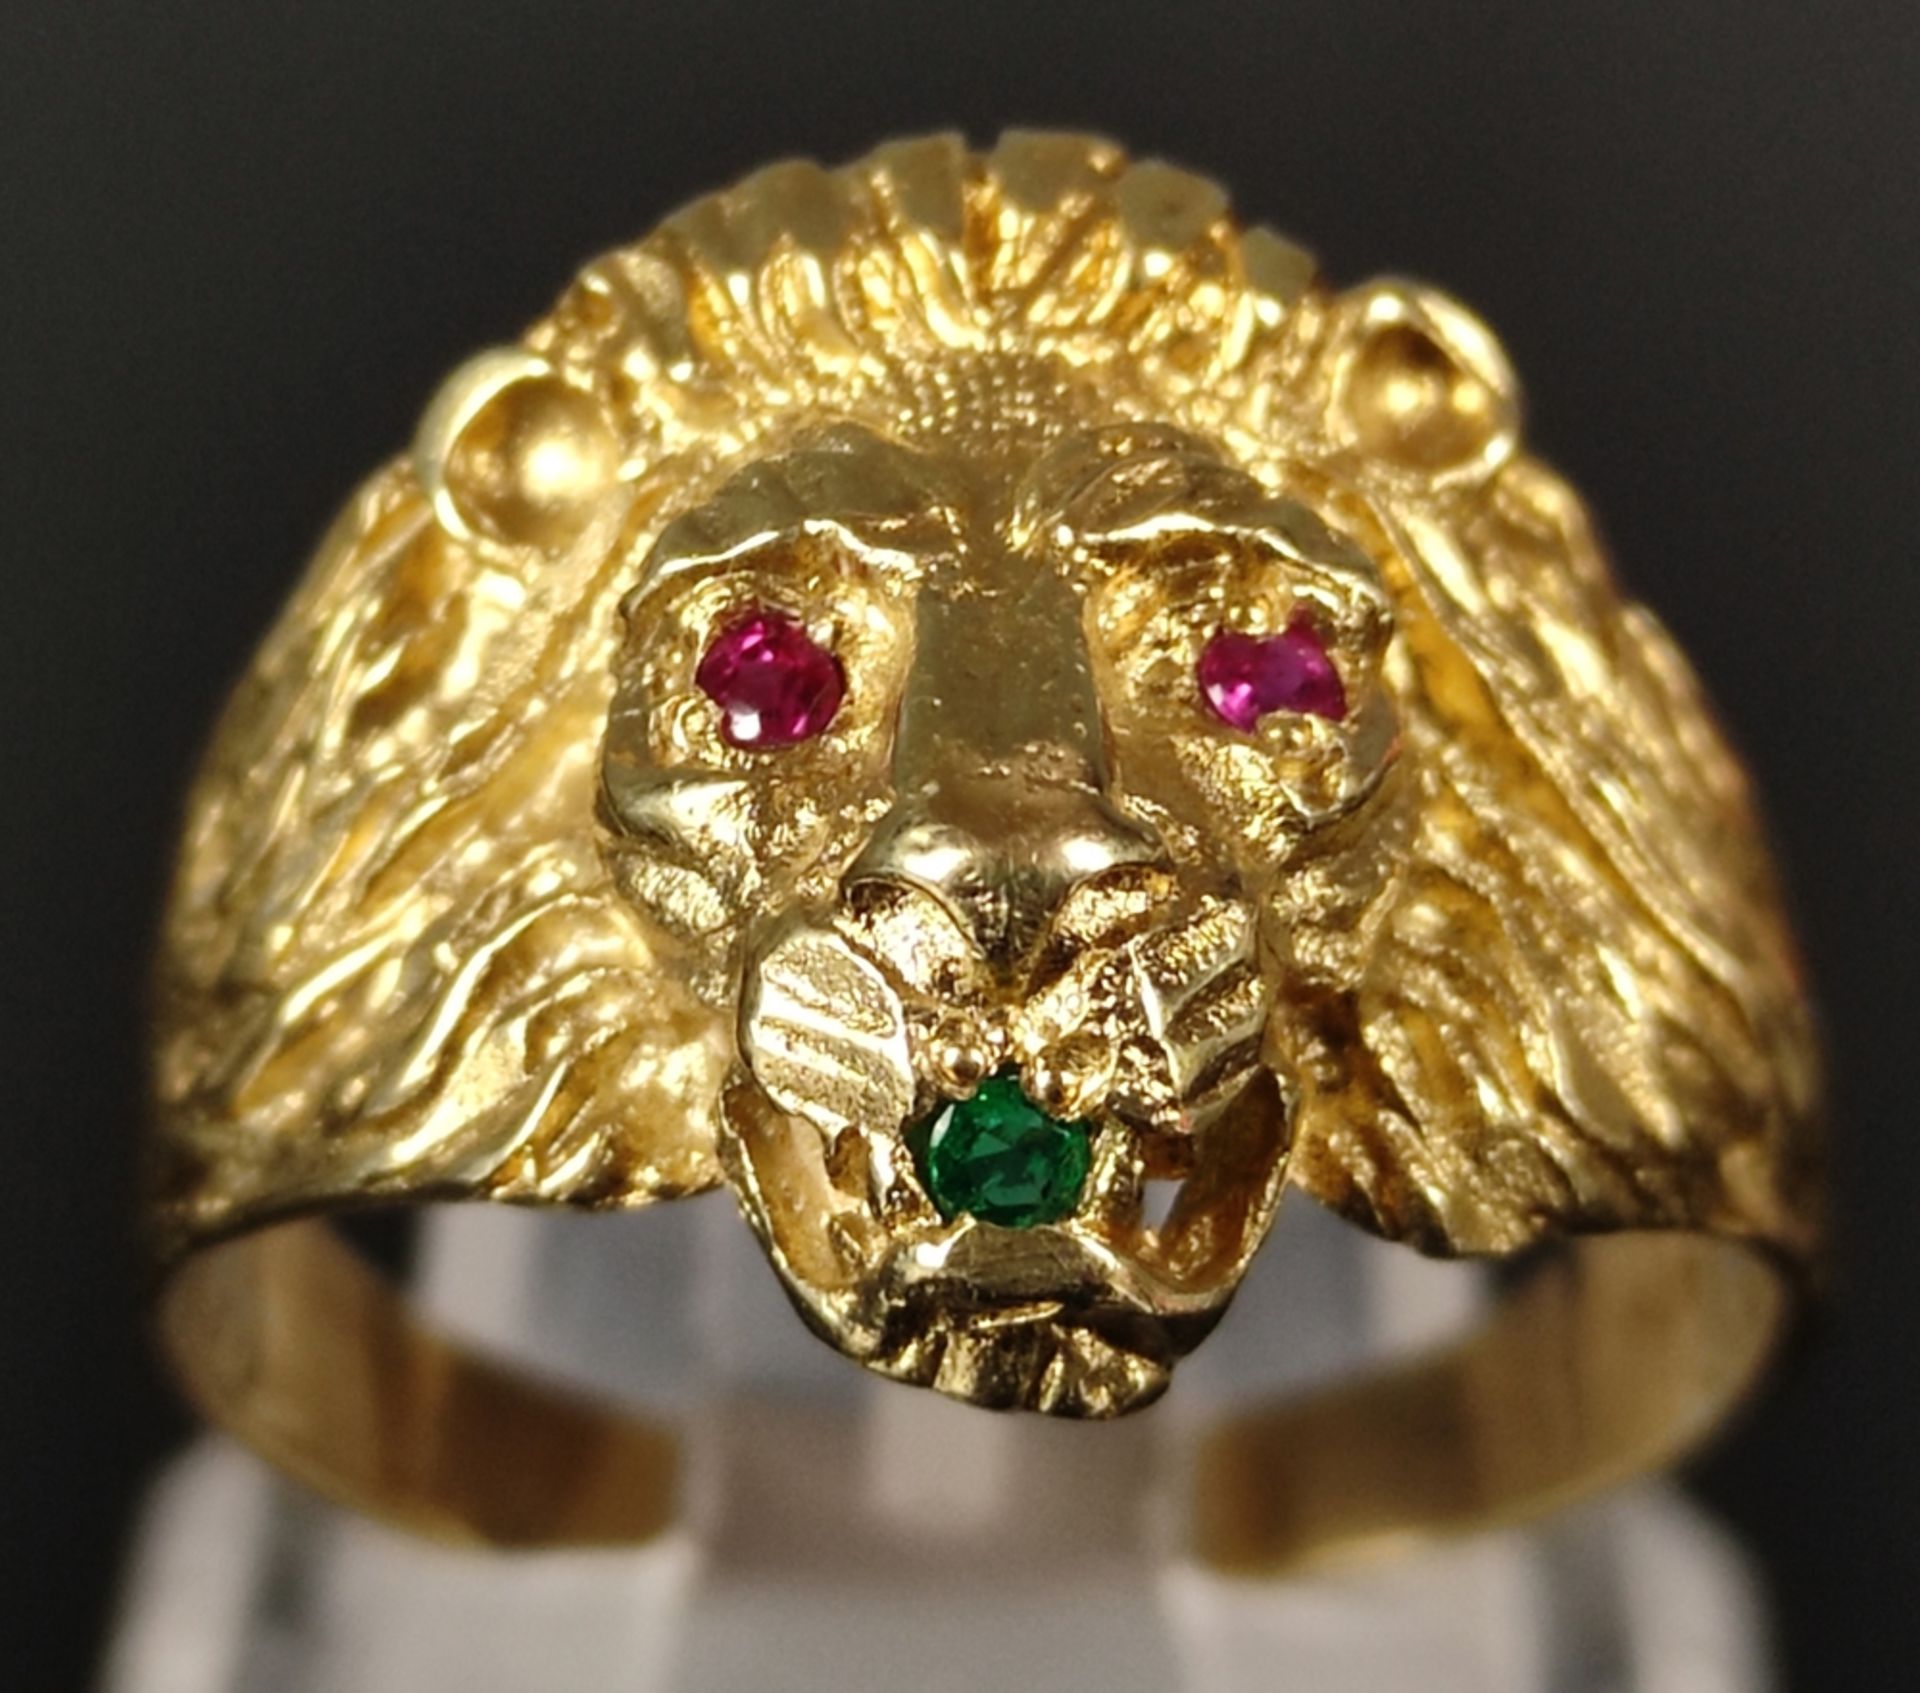 Löwenkopf-Ring, fein reliefiert ausgearbeitet und die Augen  - Bild 3 aus 5